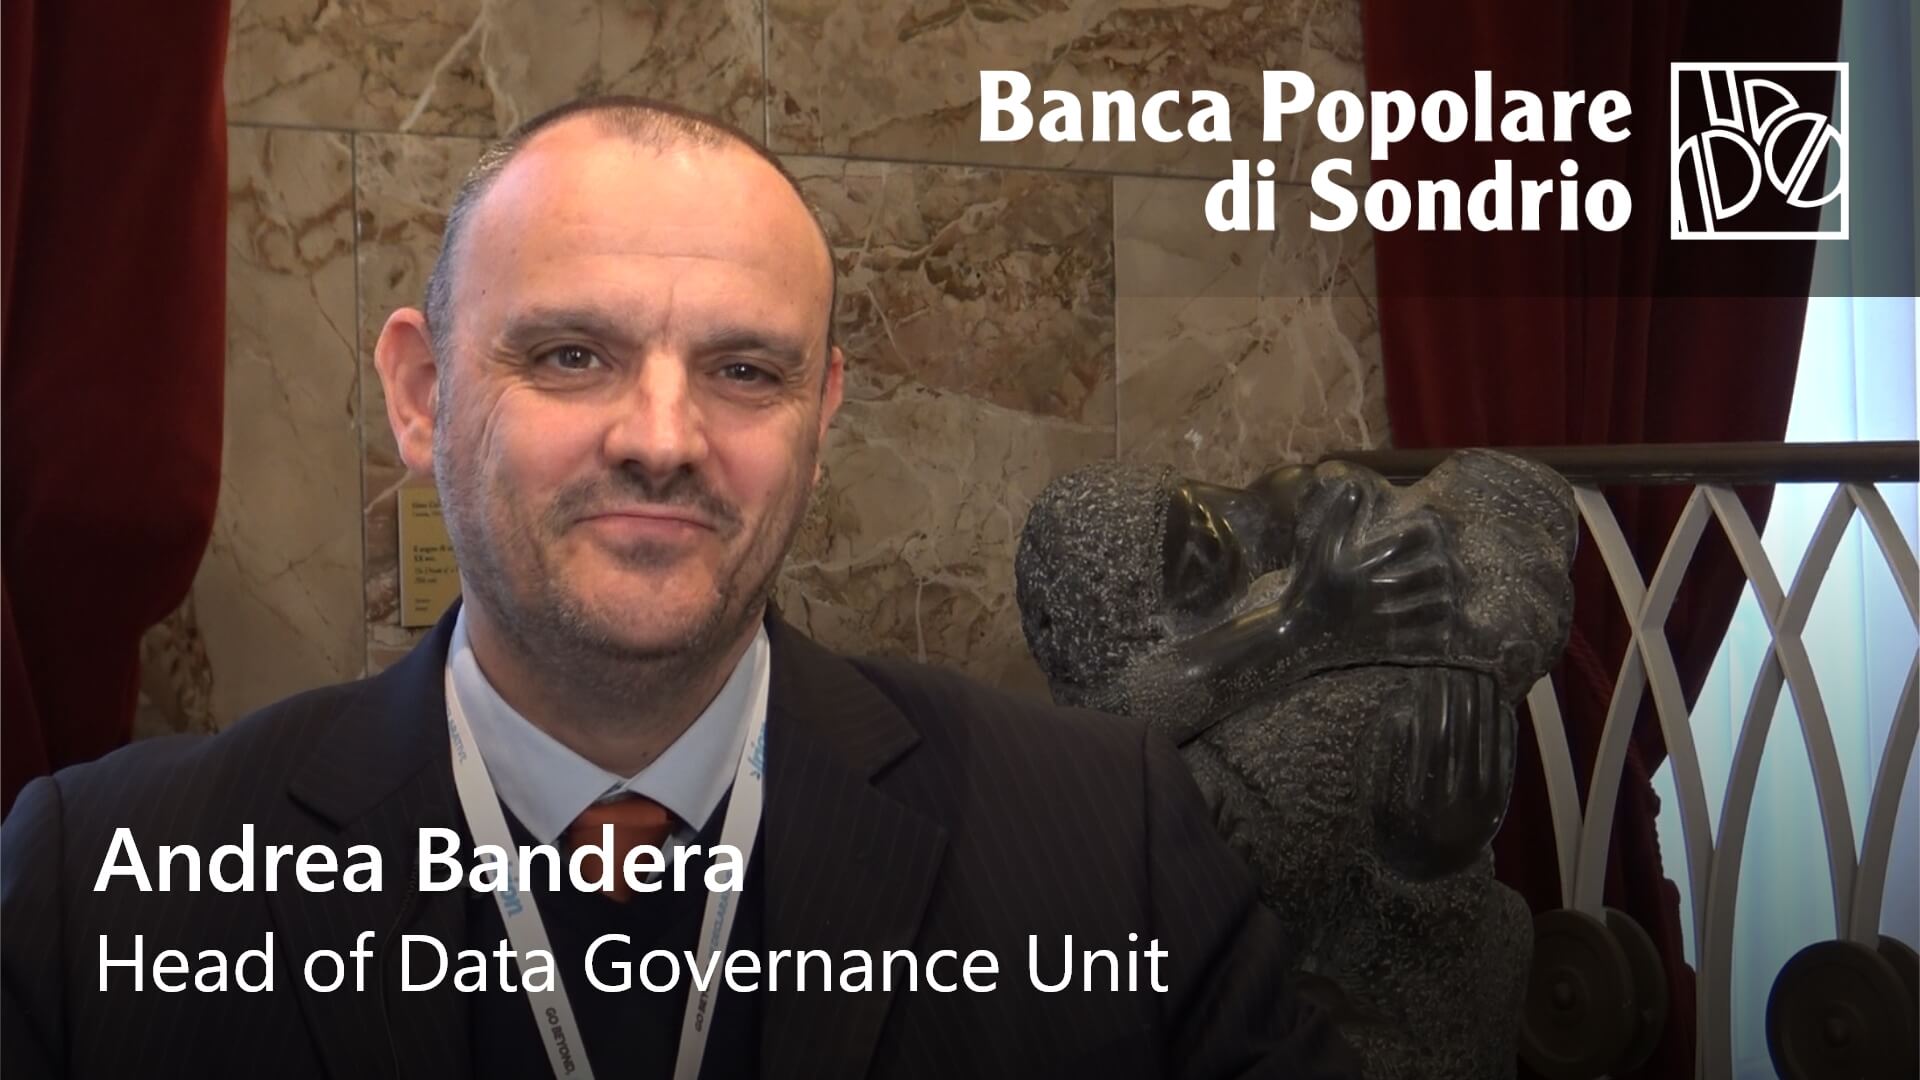 Watch Andrea Bandera from Banca Popolare di Sondrio